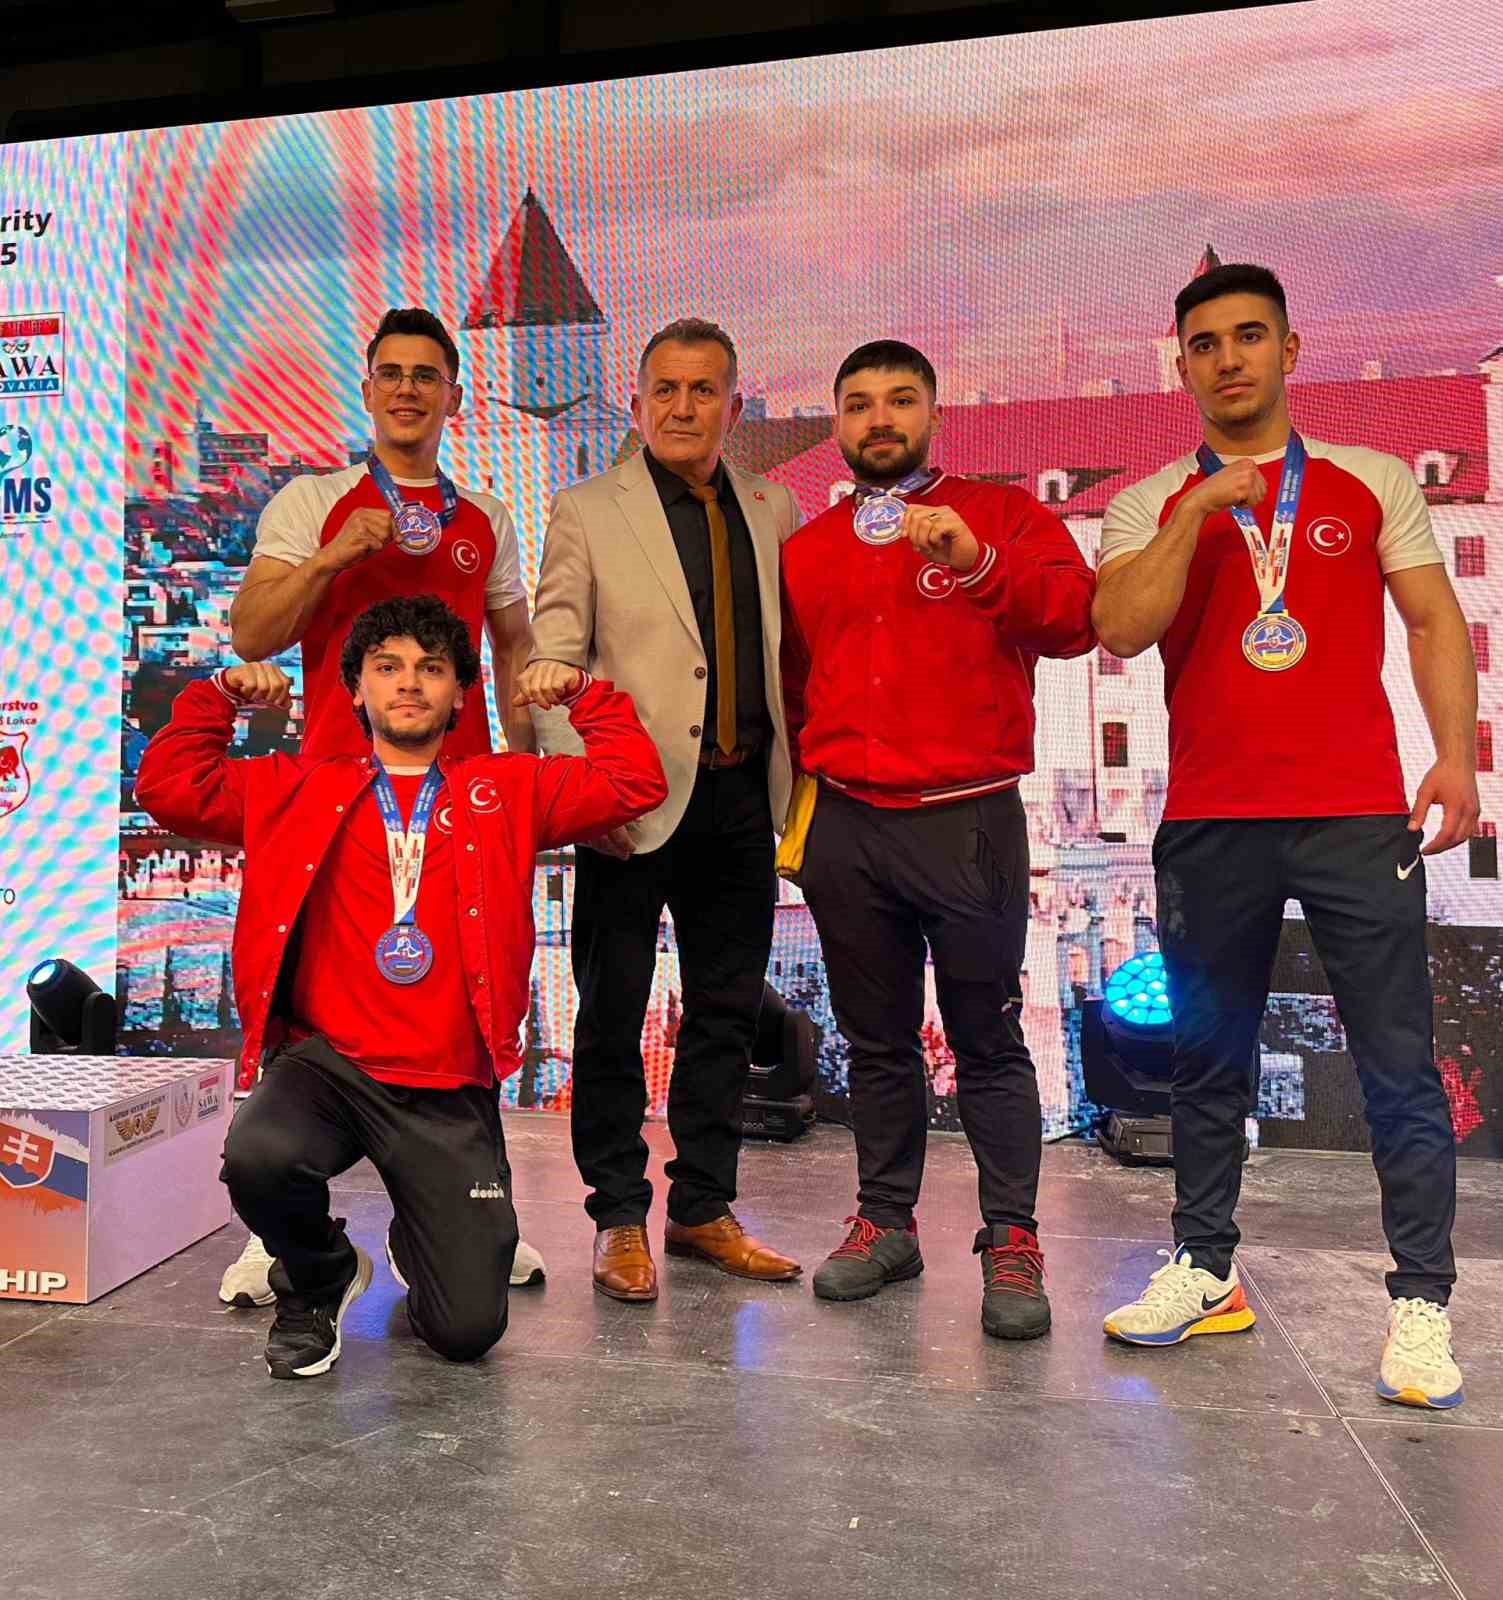 Avrupa Bilek Güreşi Şampiyonası’nda Sakaryalı gençten gururlandıran başarı
